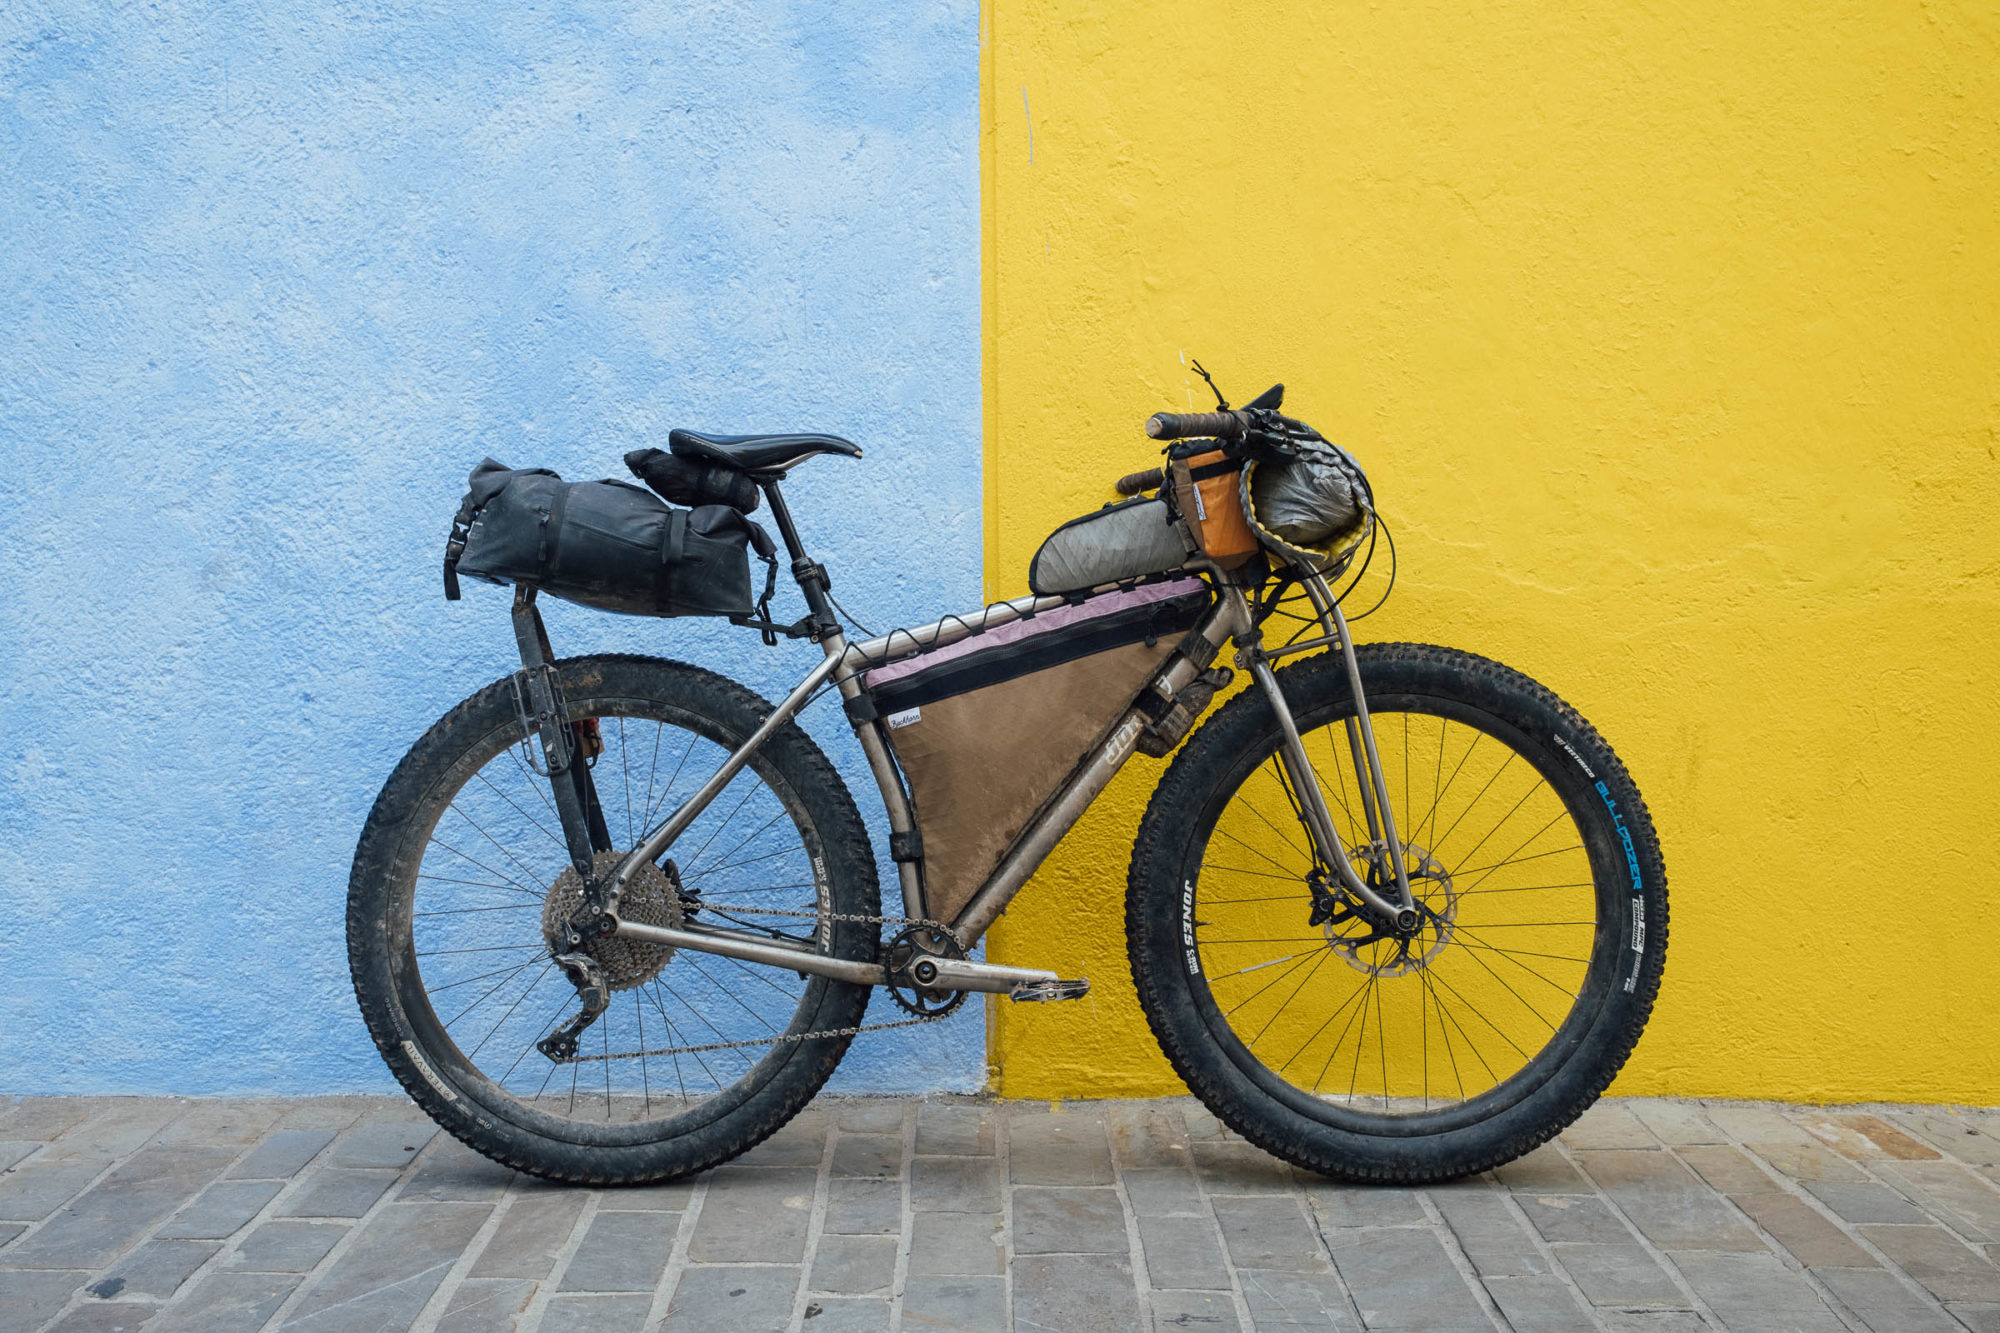 buckhorn bags bikepacking gear